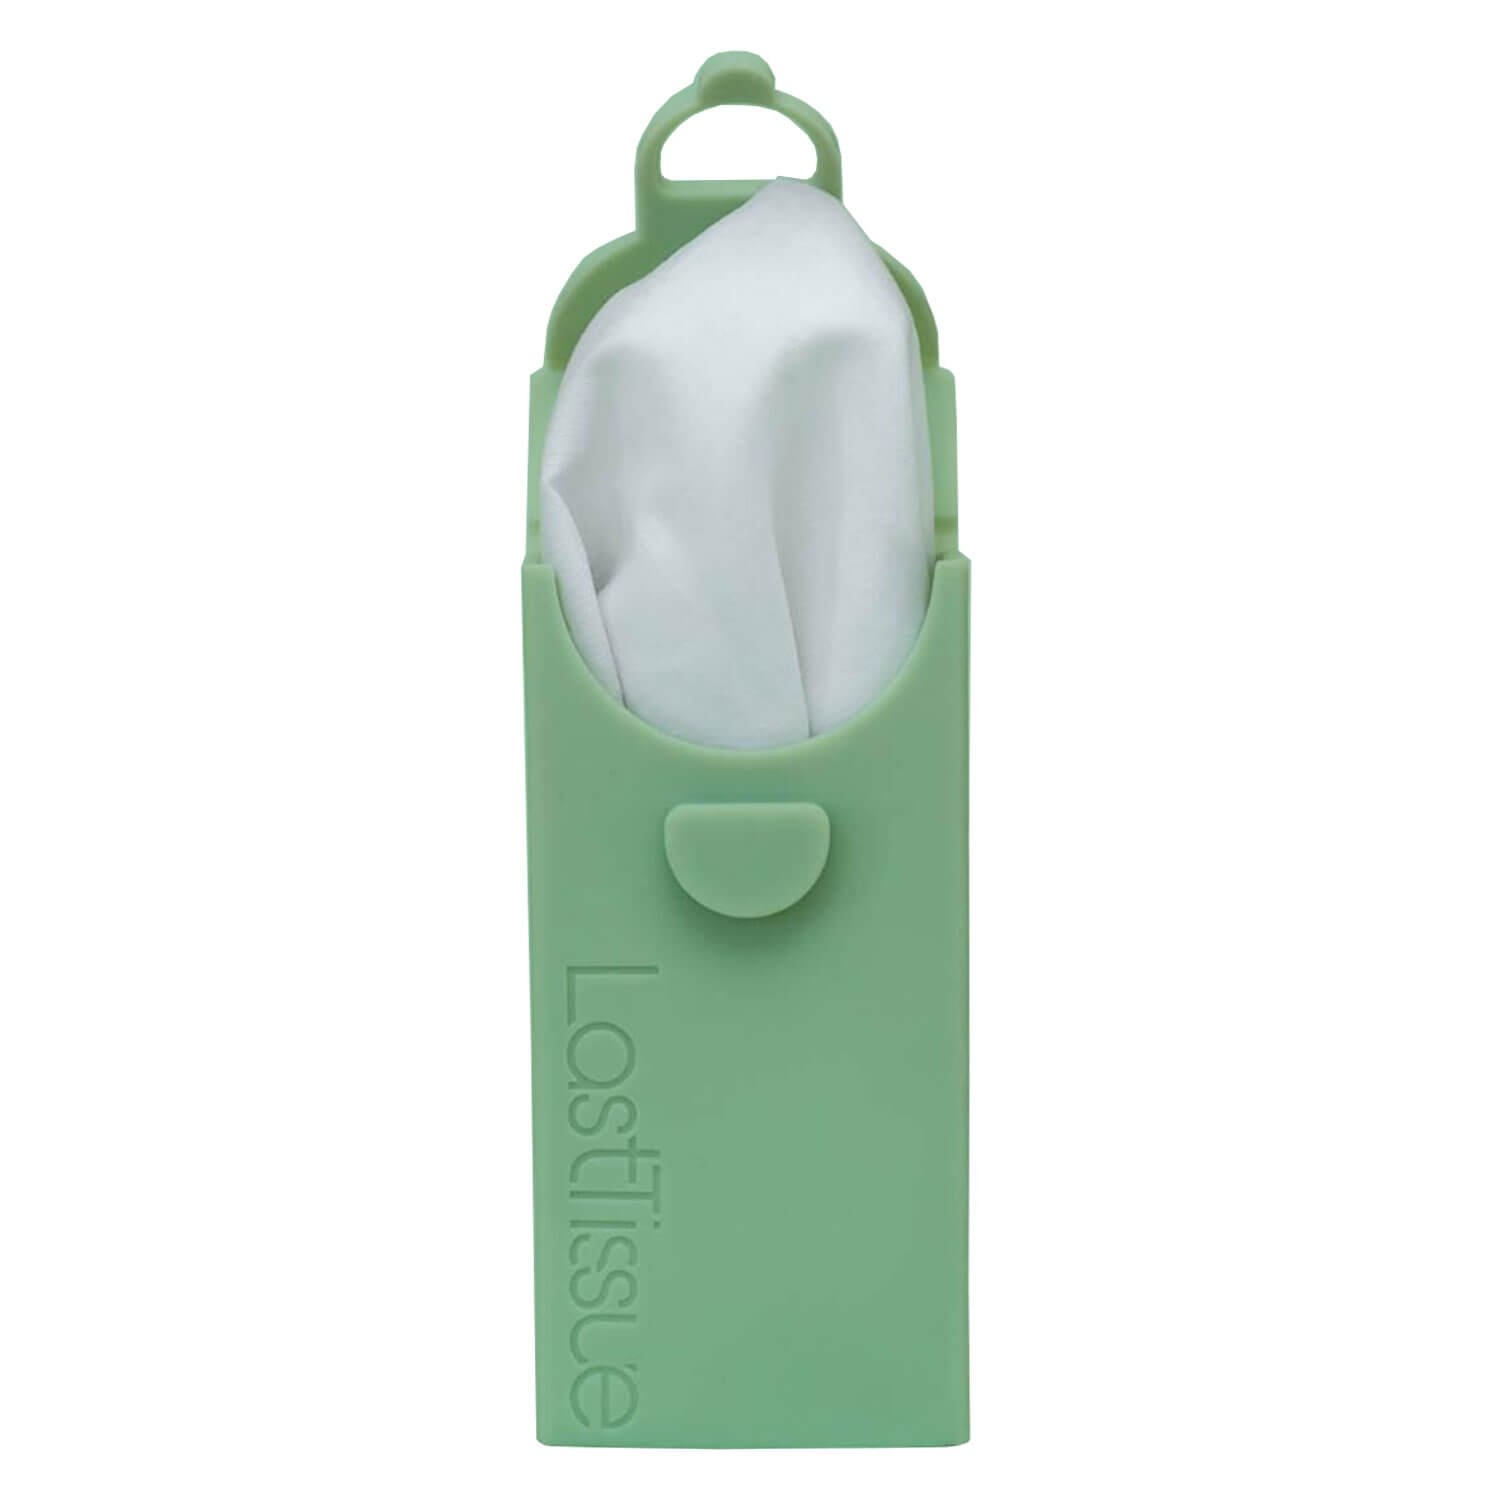 Produktbild von LastTissue - Etui mit Wiederverwendbaren Taschentüchern Grün